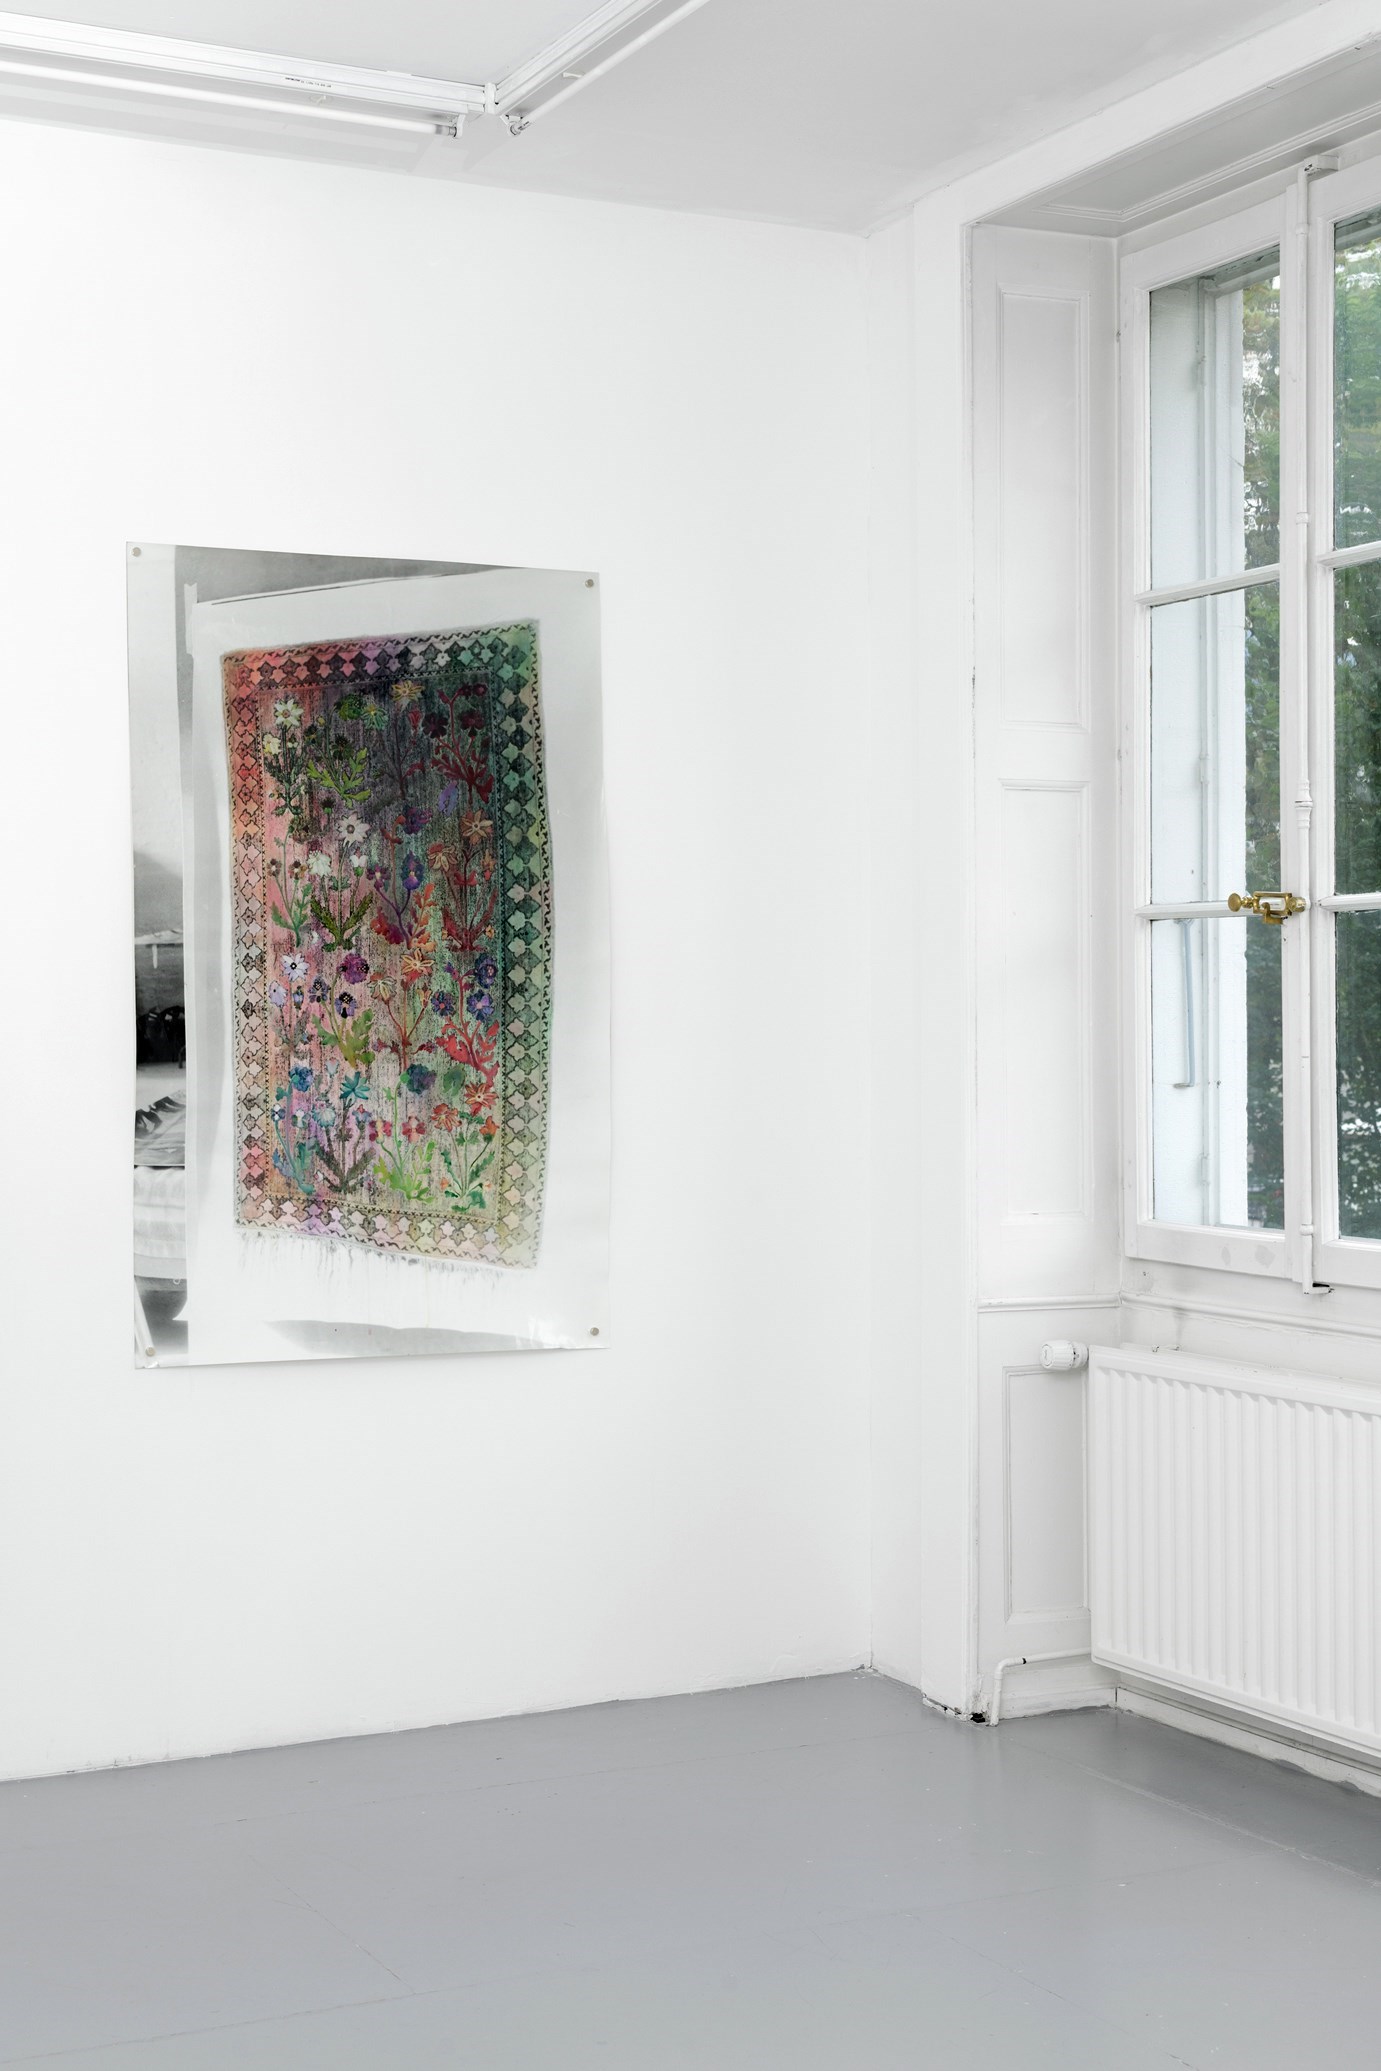 Tapisserie/Polenteppich<br />ca. 130 cm x 90 cm, colored silver gelatin print, 2014<br /><br />Photography: Aurélien Mole<br />